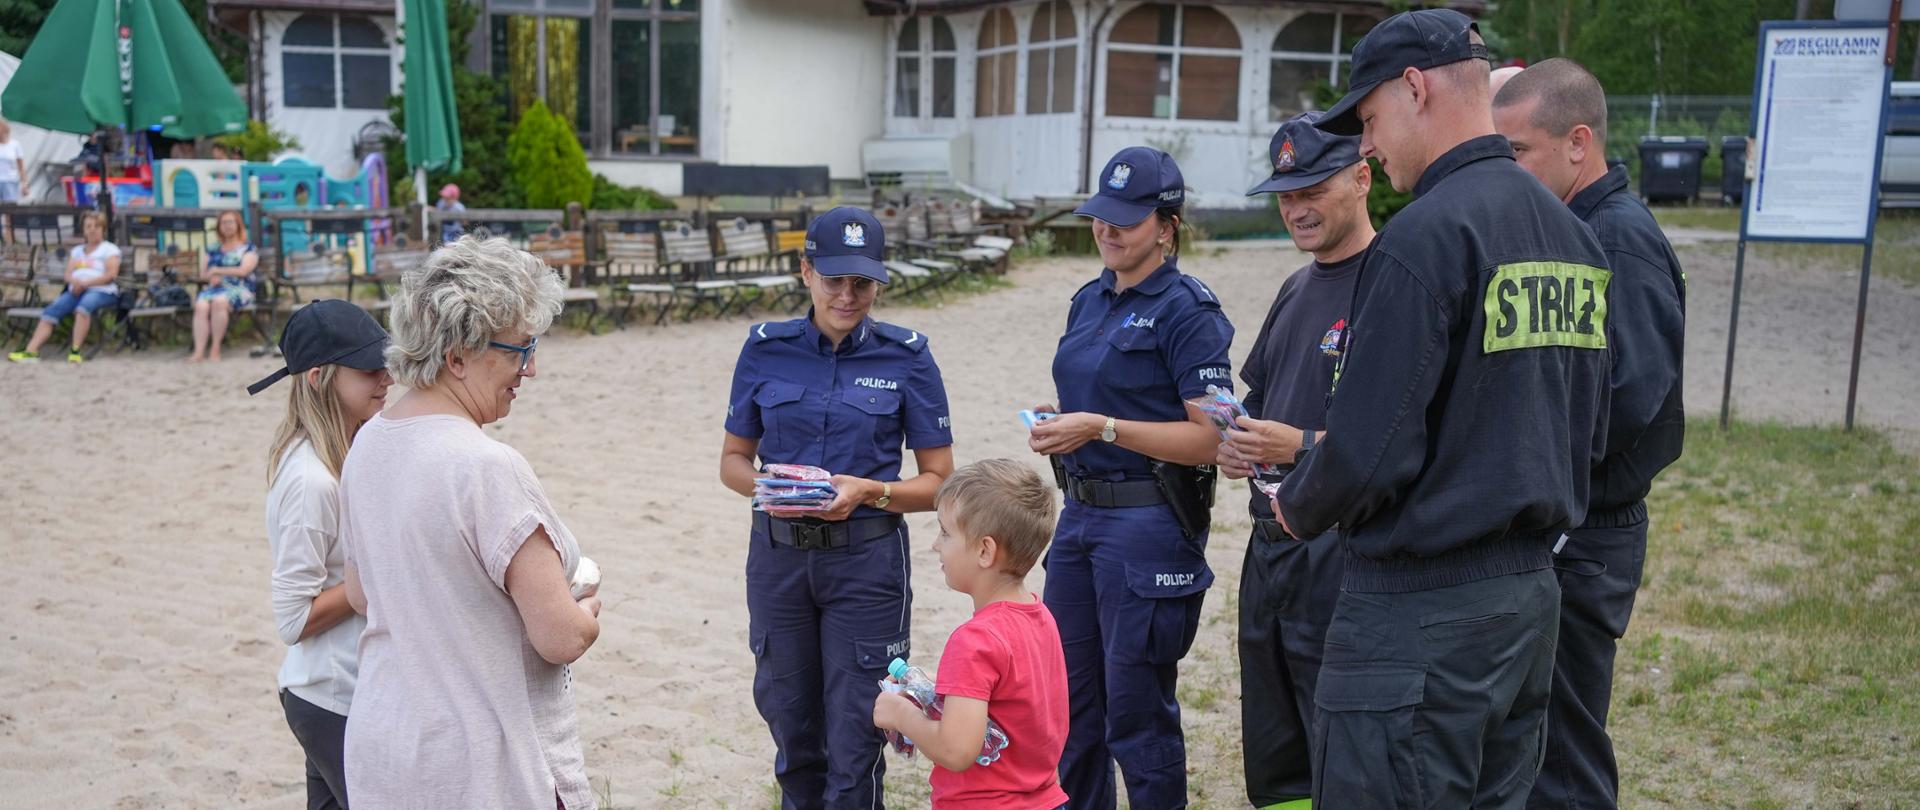 Na zdjęciu widać strażaków oraz policjantów podczas wspólnej akcji prewencyjnej na plaży jeziora Piaszczystego.